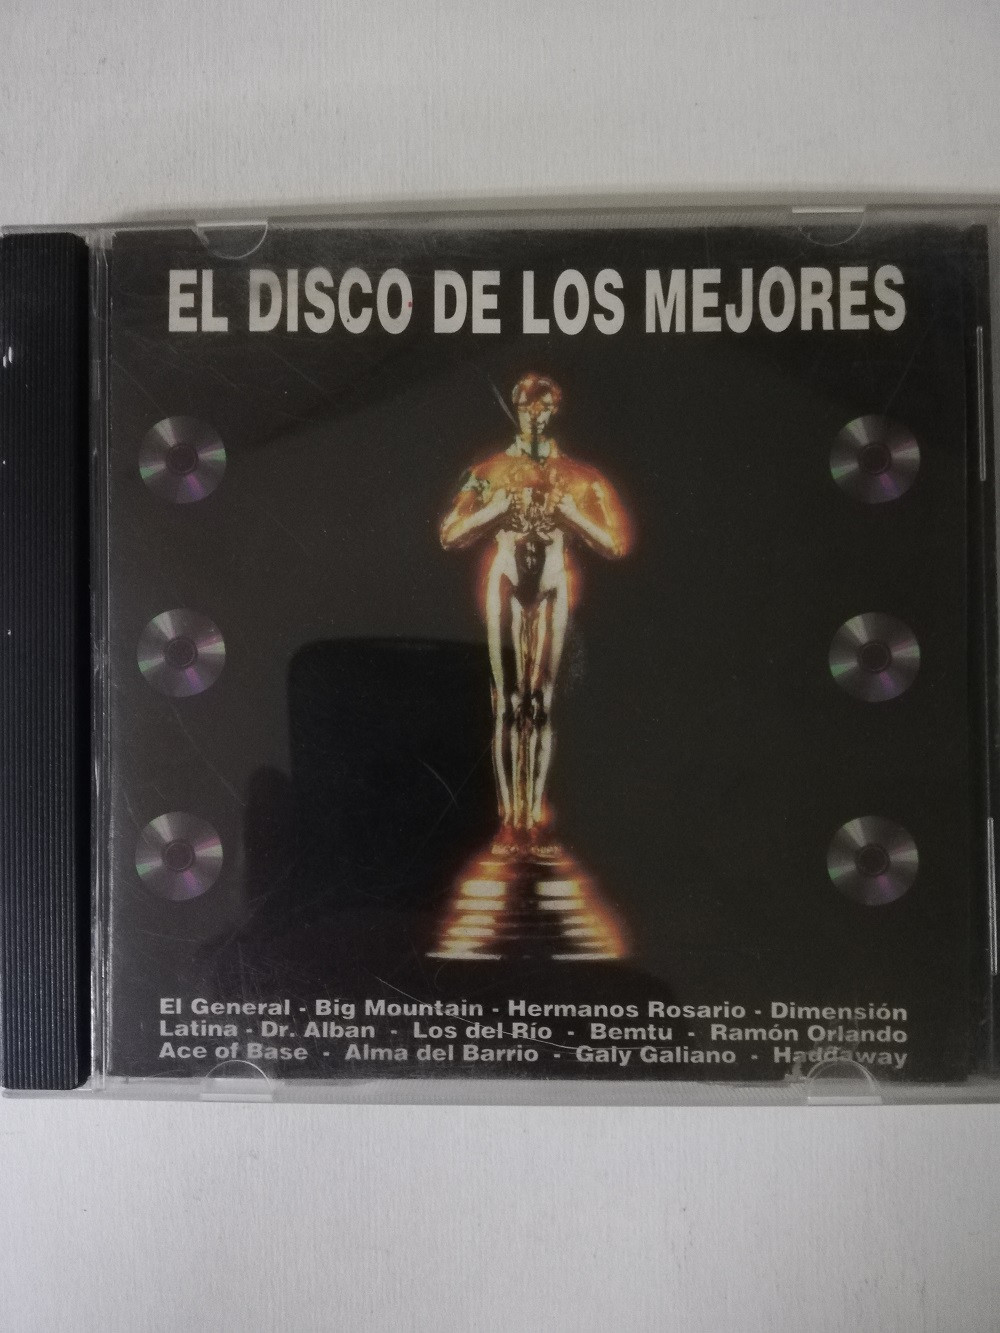 Imagen CD EL DISCO DE LOS MEJORES - EL DISCO DE LOS MEJORES VOL. 1